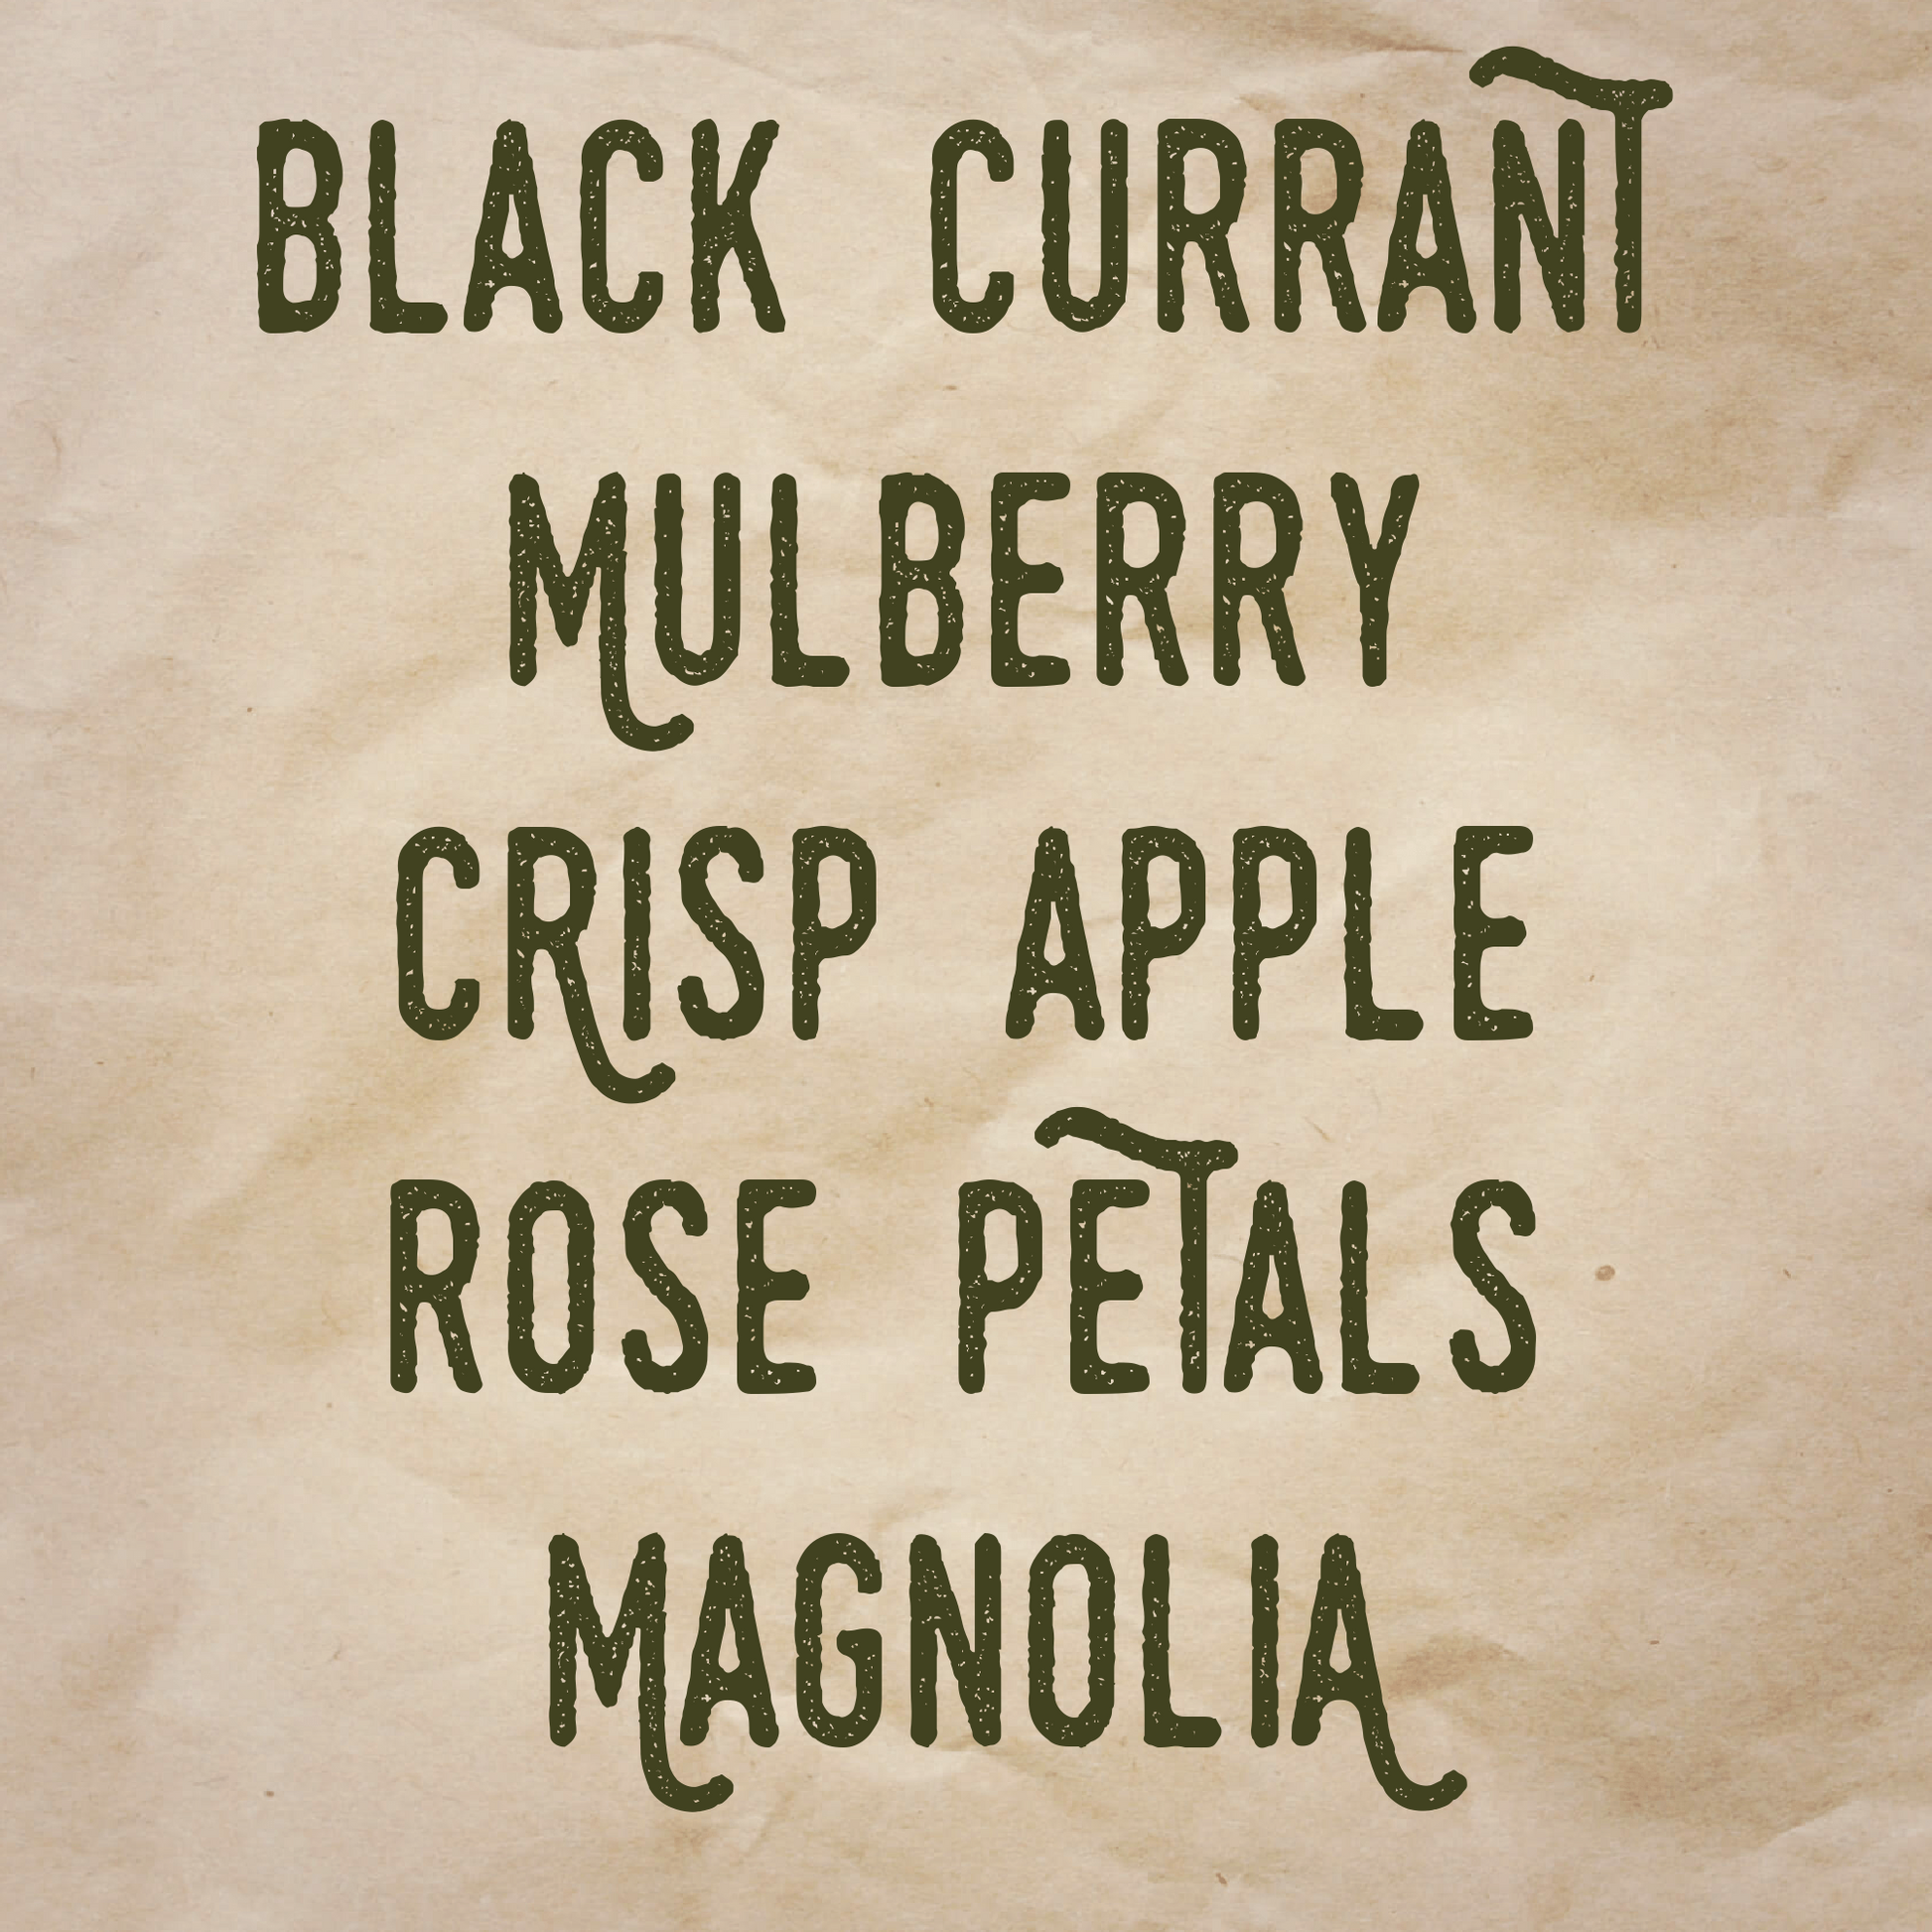 Bonaventure scent notes: Black currant, mulberry, crisp apple, rose petals, and magnolia.